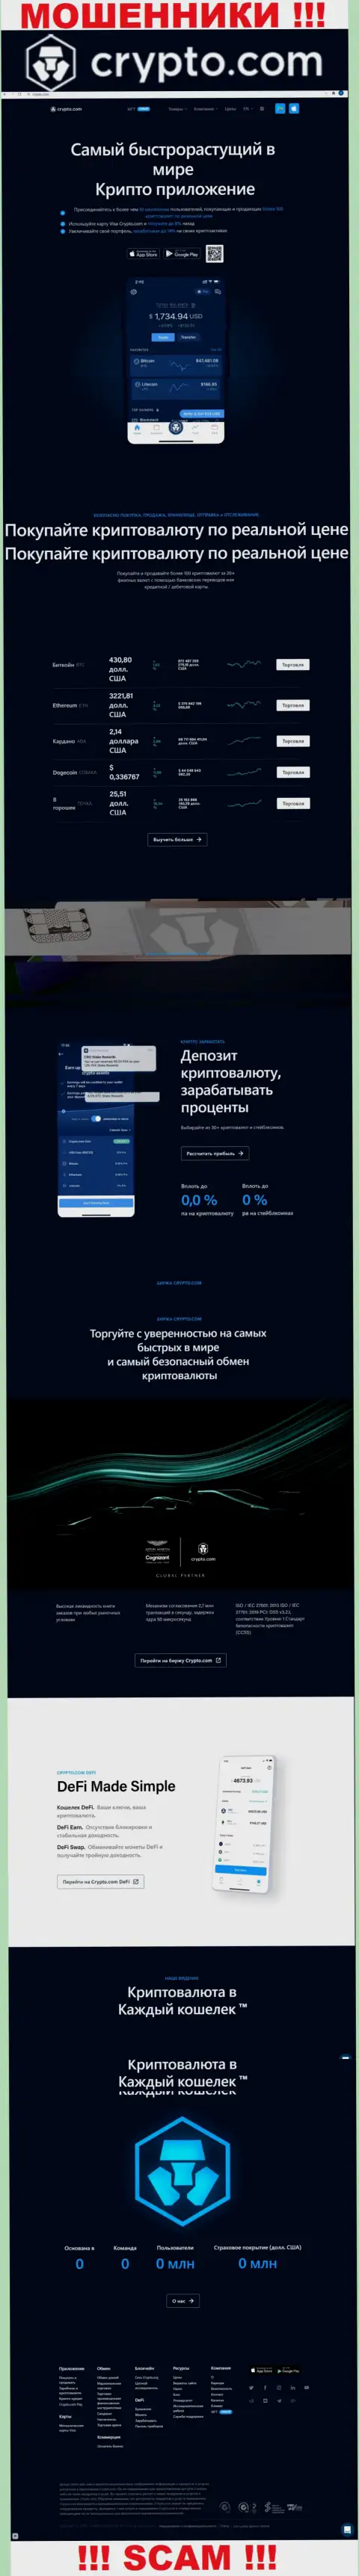 Официальный web-сайт мошенников КриптоКом, заполненный инфой для доверчивых людей